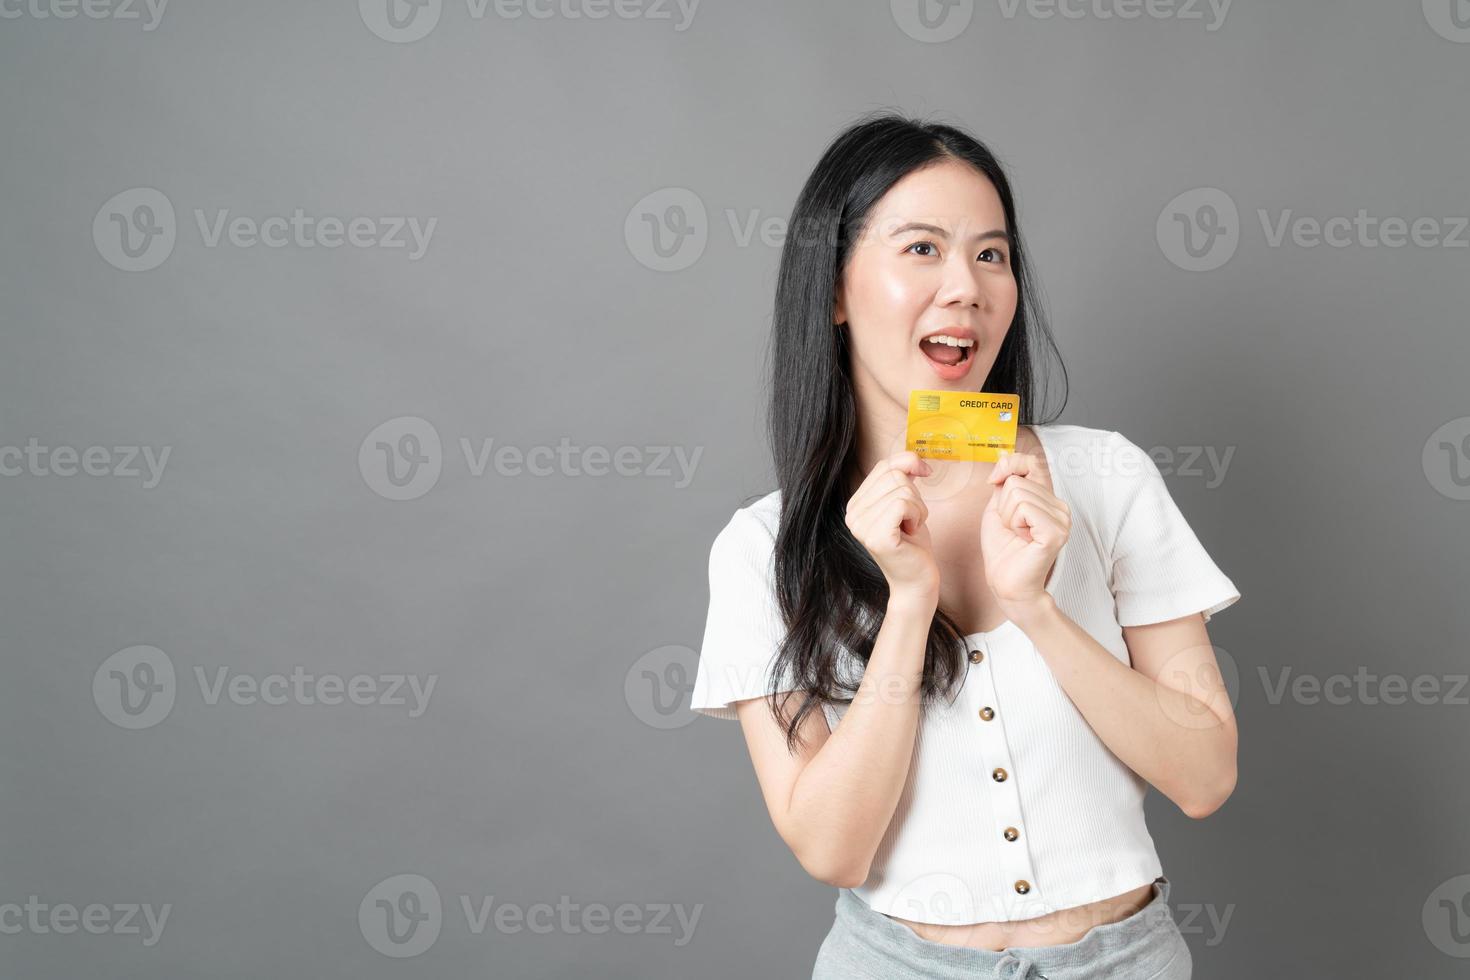 femme asiatique avec un visage heureux et présentant une carte de crédit en main montrant la confiance pour effectuer le paiement photo